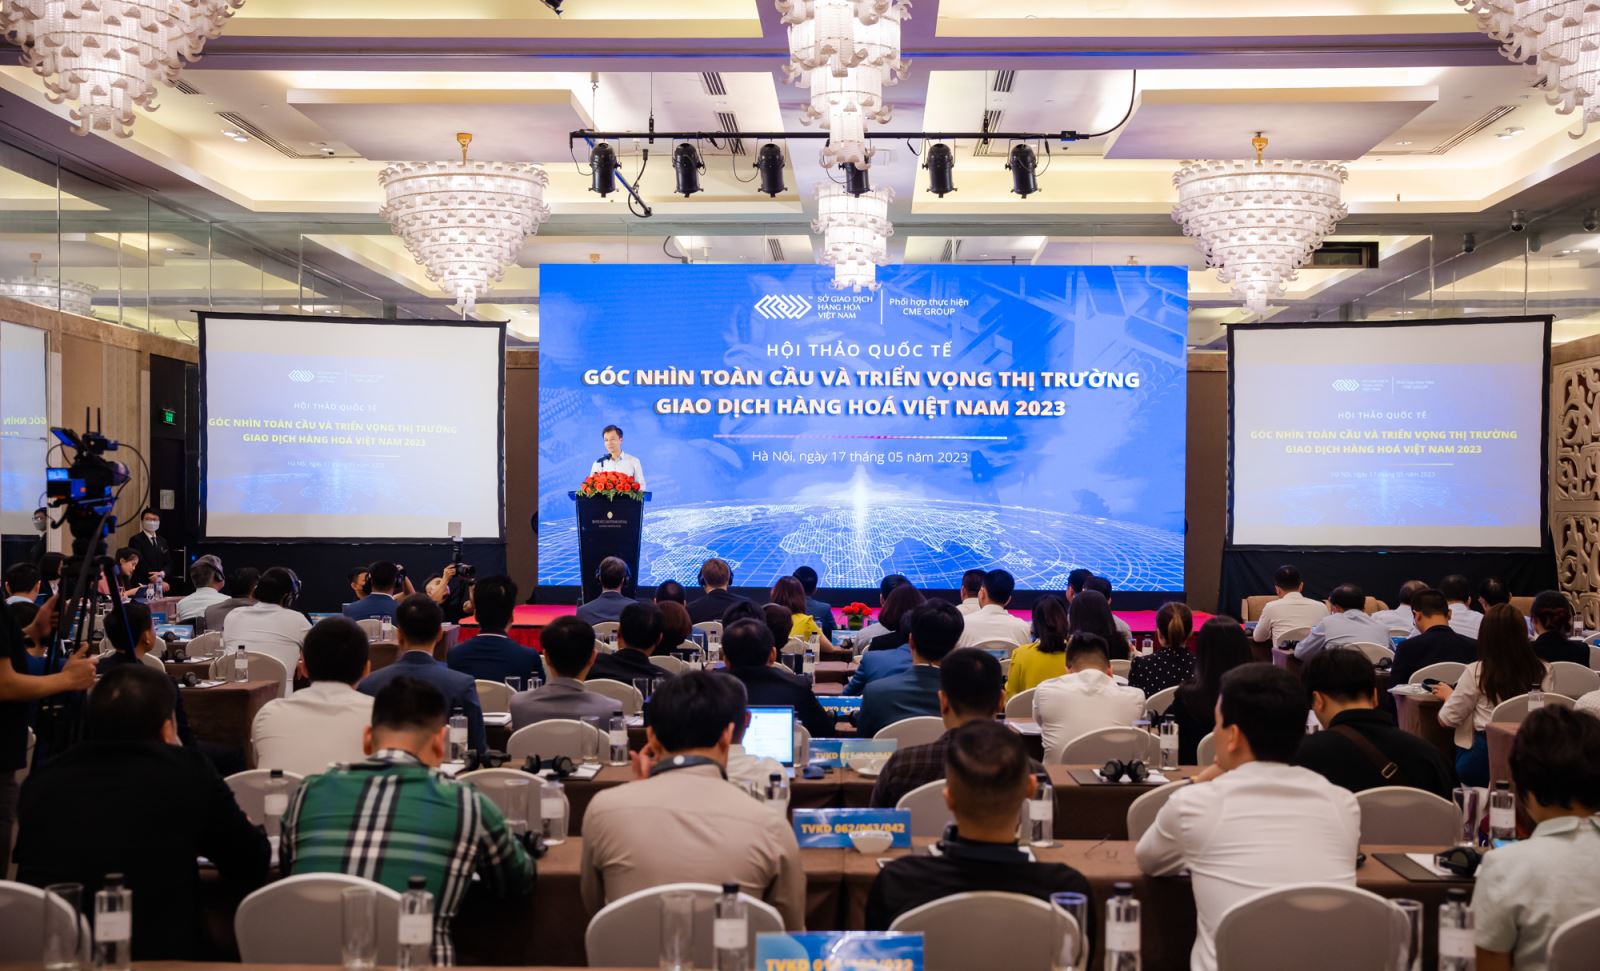 Hội thảo quốc tế: “Góc nhìn toàn cầu và triển vọng thị trường giao dịch hàng hóa Việt Nam 2023”